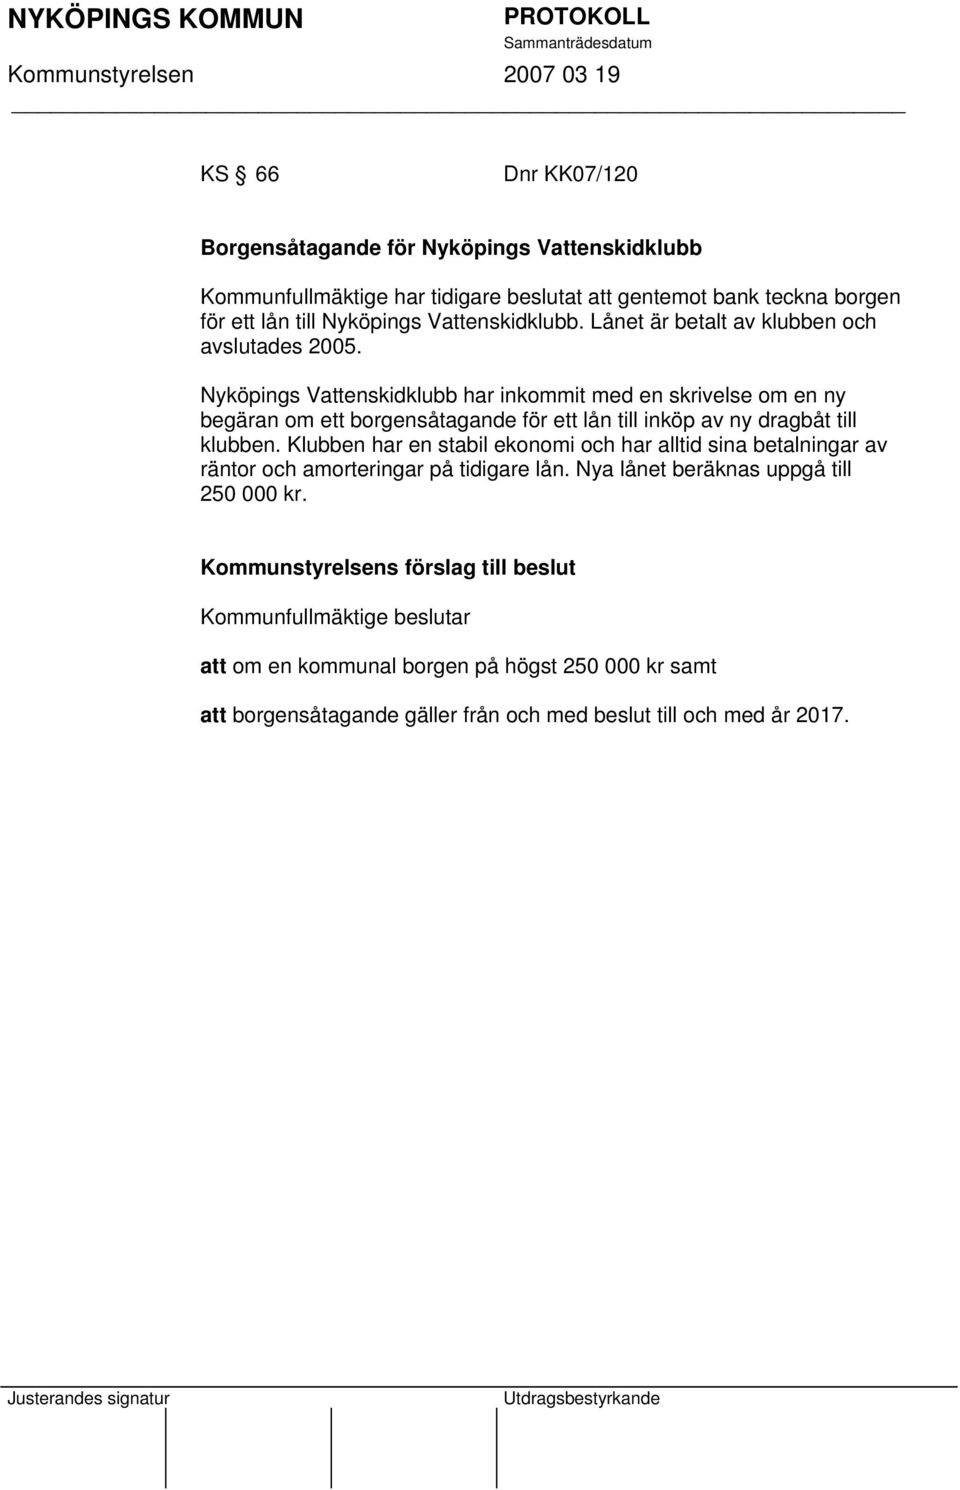 Nyköpings Vattenskidklubb har inkommit med en skrivelse om en ny begäran om ett borgensåtagande för ett lån till inköp av ny dragbåt till klubben.